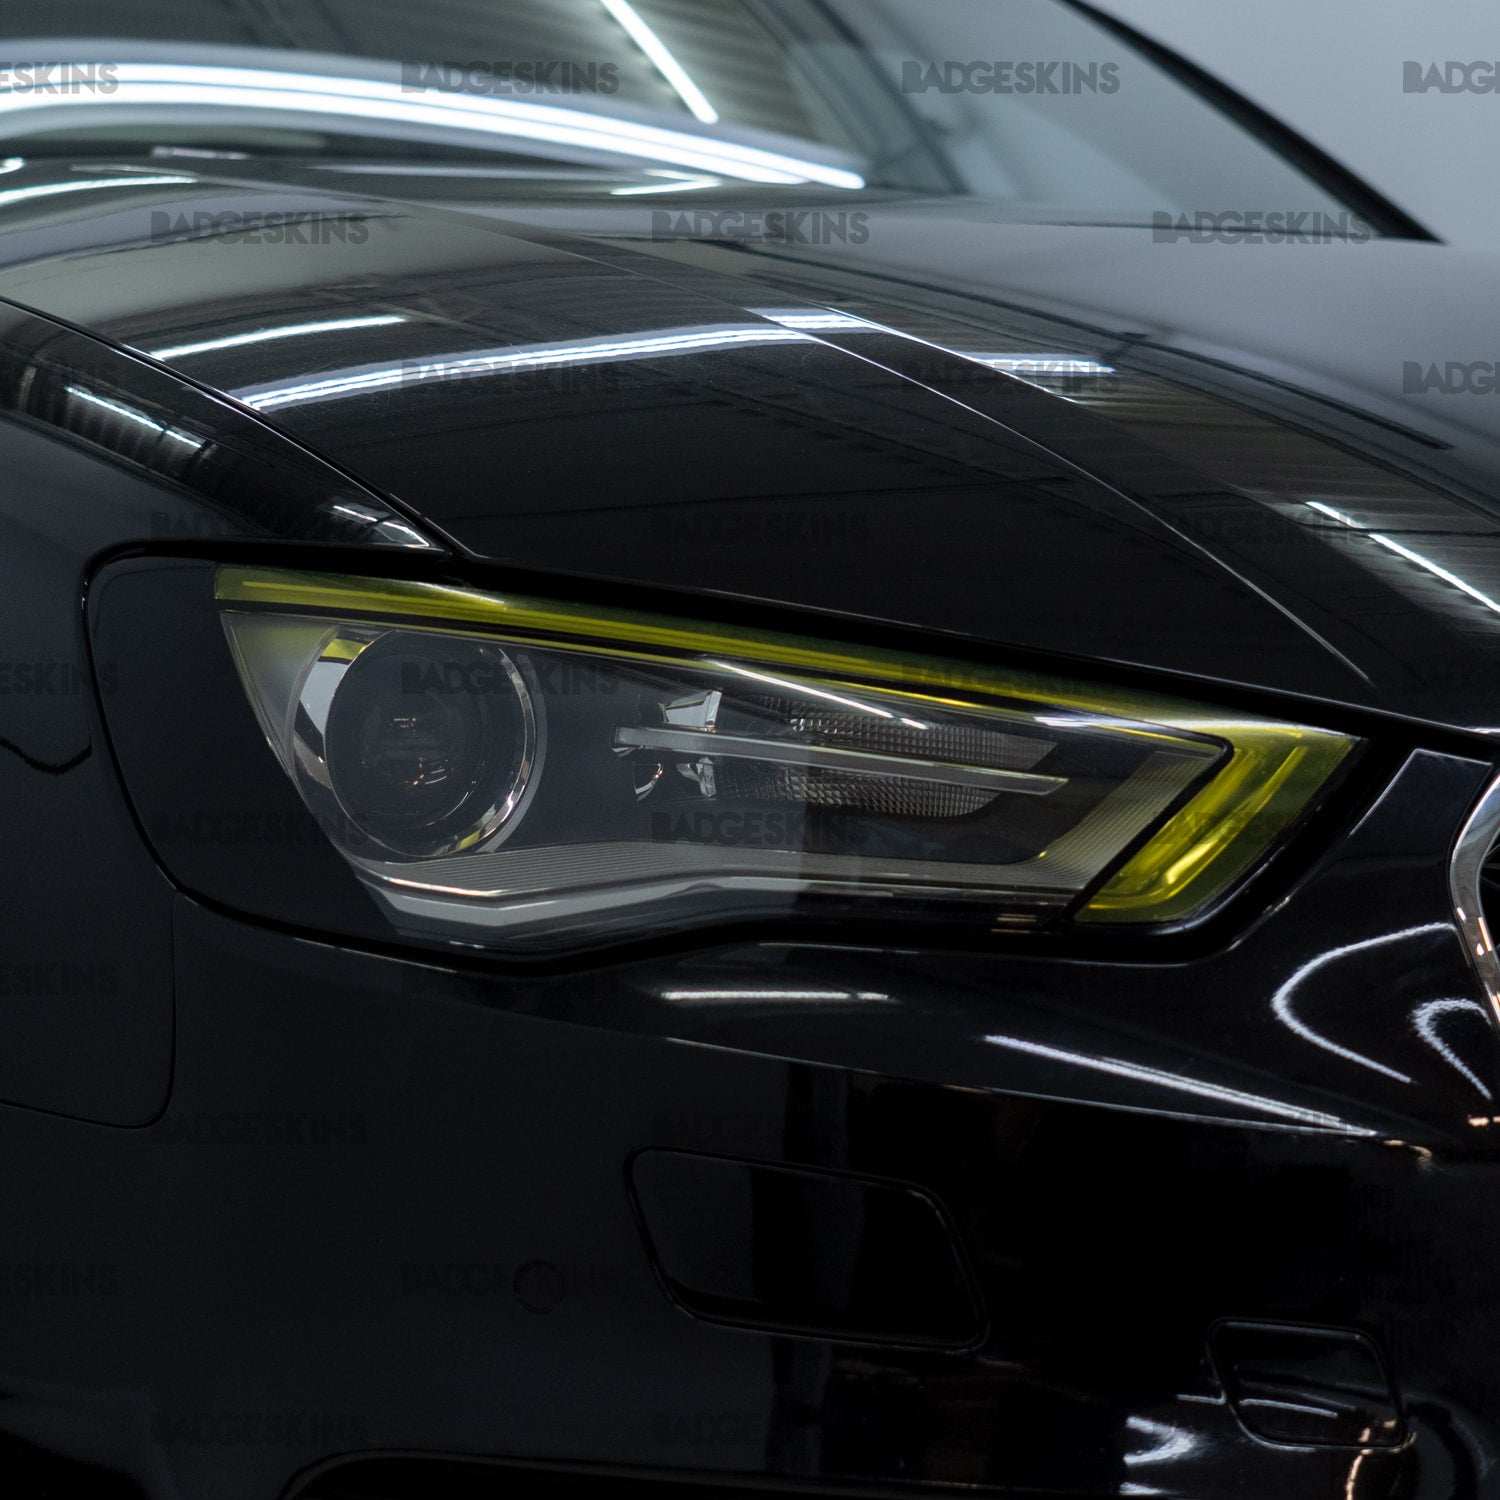 Audi - 8V - A3/S3/RS3 Platform - Head Light DRL Tint (2014-2016) –  Badgeskins